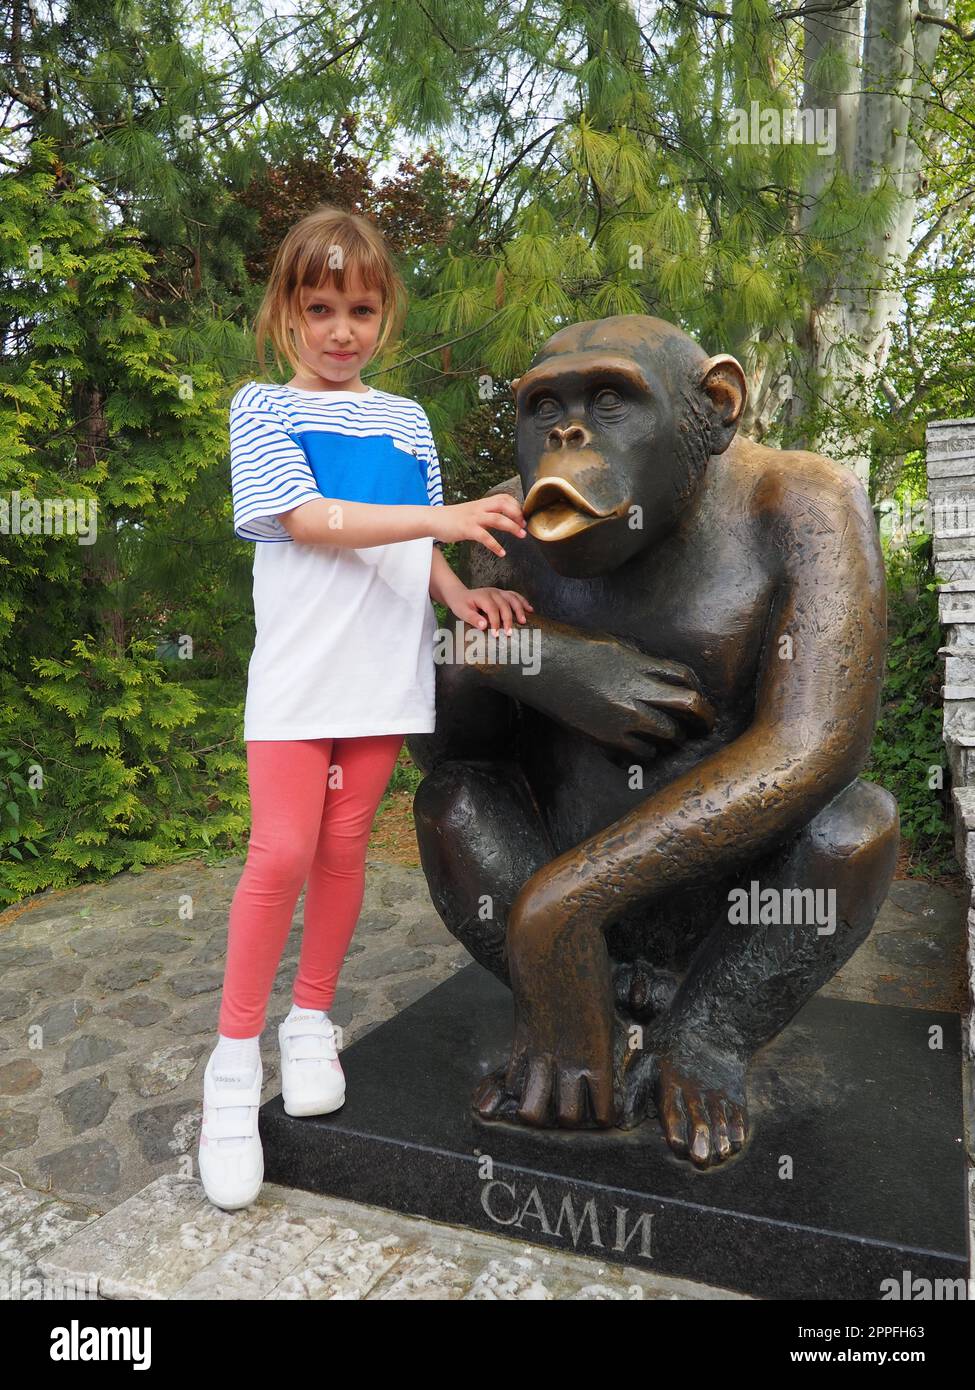 Belgrado, Serbia, 25 aprile 2021. Una bambina di 7 anni con i capelli biondi si trova accanto alla statua dello scimpanzé Sami, il simbolo dello zoo di Belgrado. Iscrizione - Sami, il soprannome della scimmia. Foto Stock